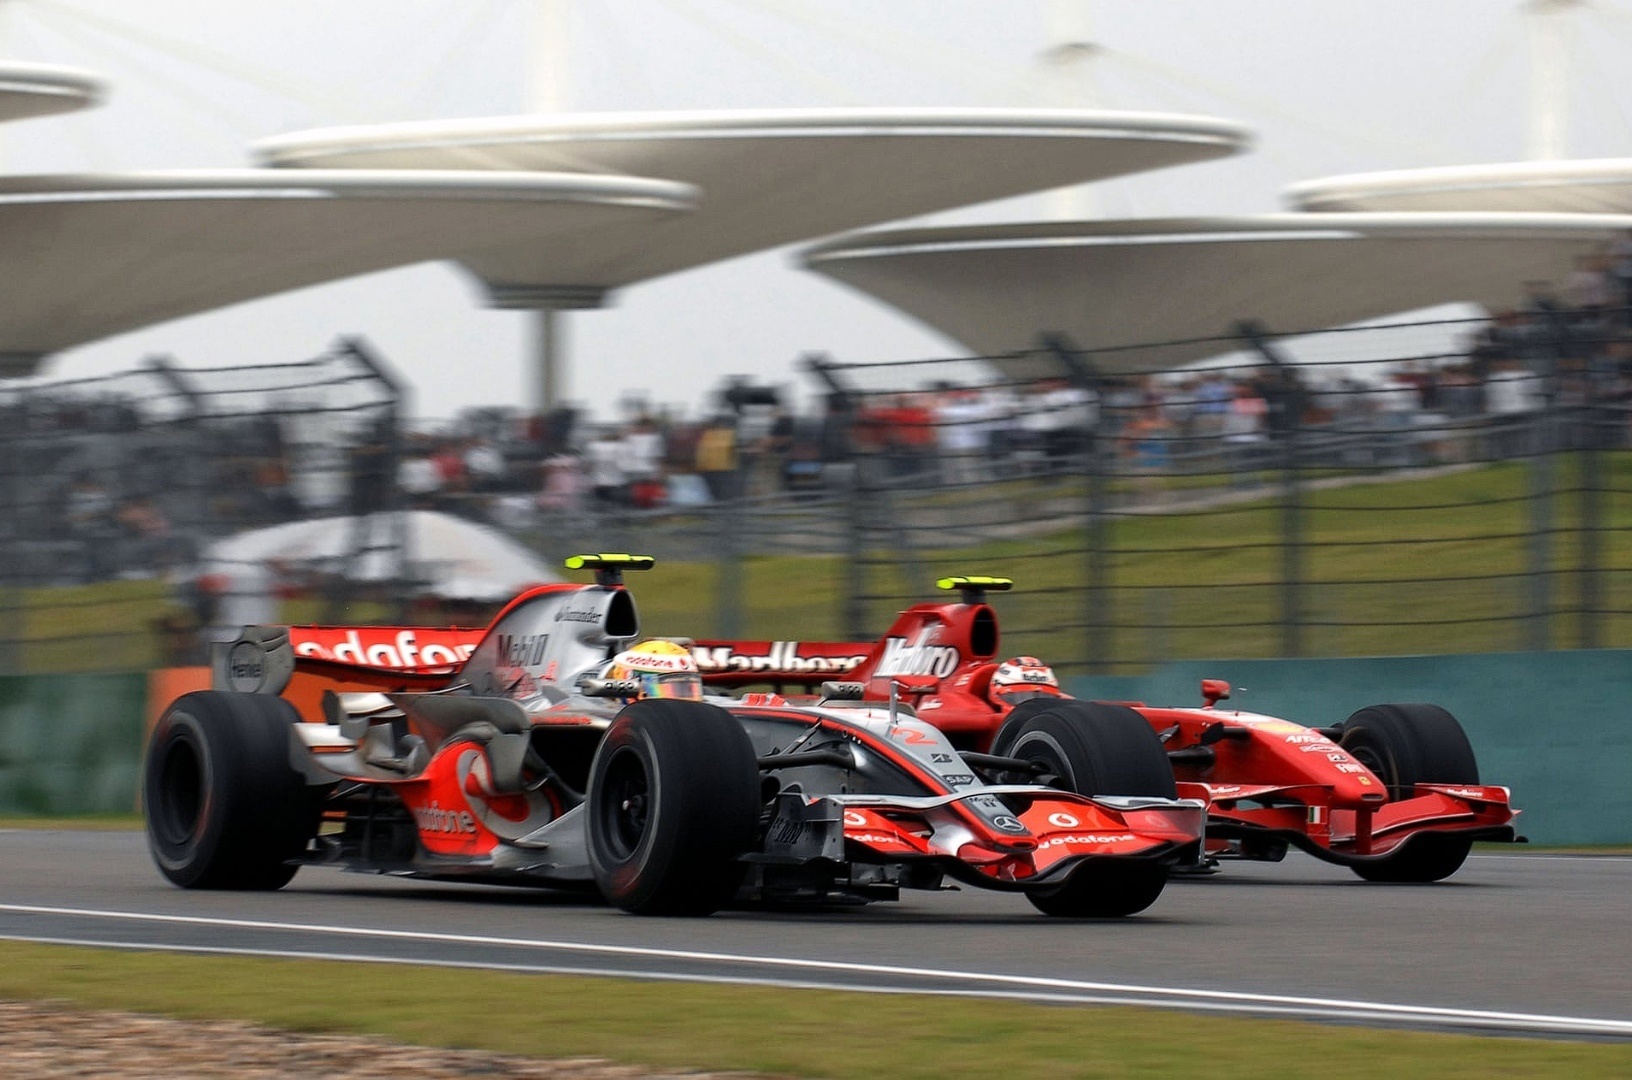 Çin GP 2007 - Lewis Hamilton (McLaren MP4-22) ve Kimi Raikkönen (Ferrari F2007) 